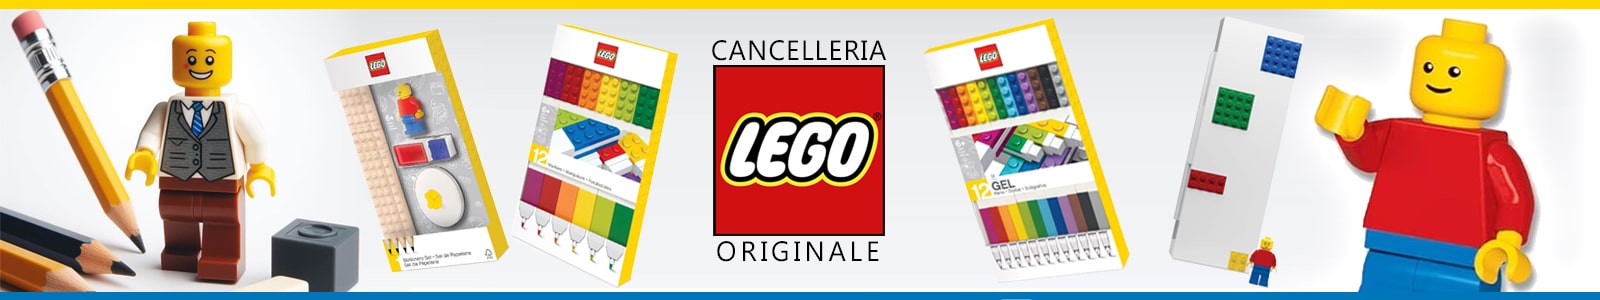 Cancelleria originale della Lego, linea ispirata ai famosi mattoncini colorati